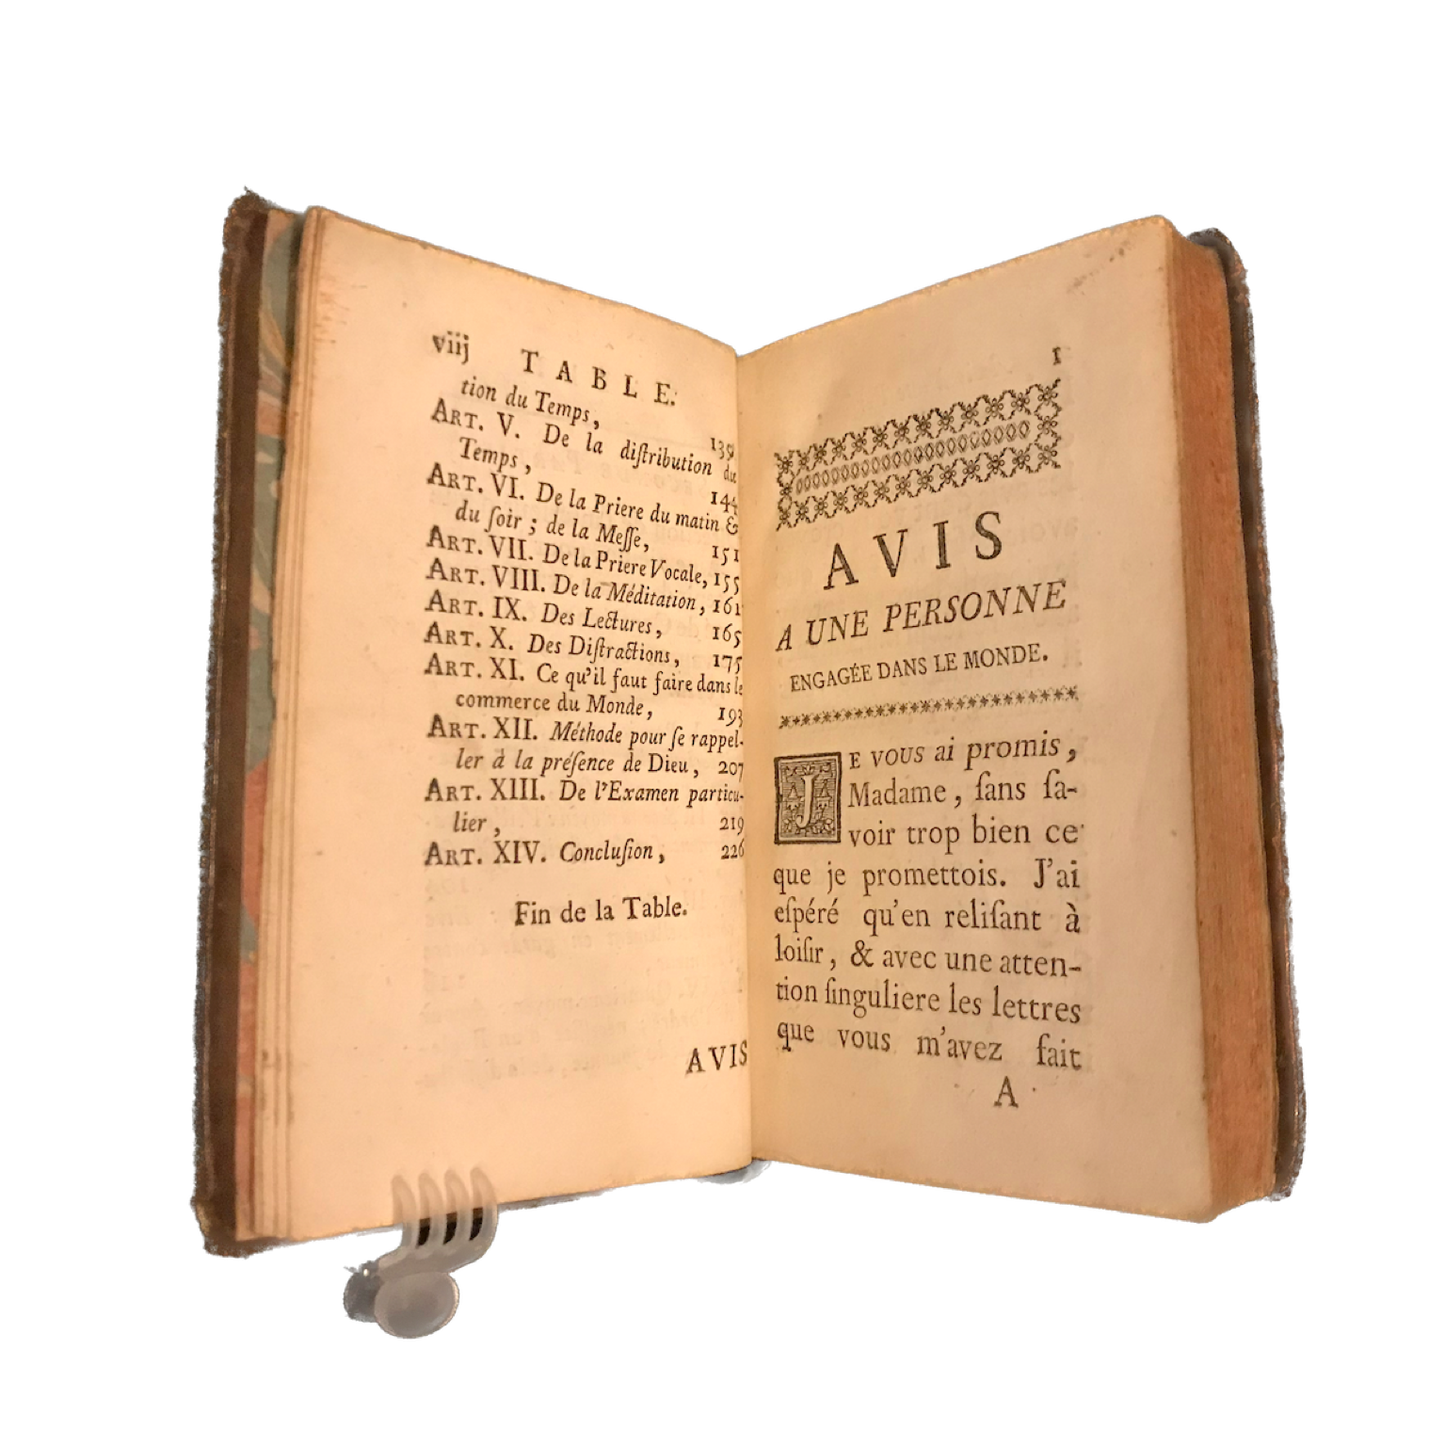 1759 - CLÉMENT (L'abbé). Avis à une personne engagée dans le monde